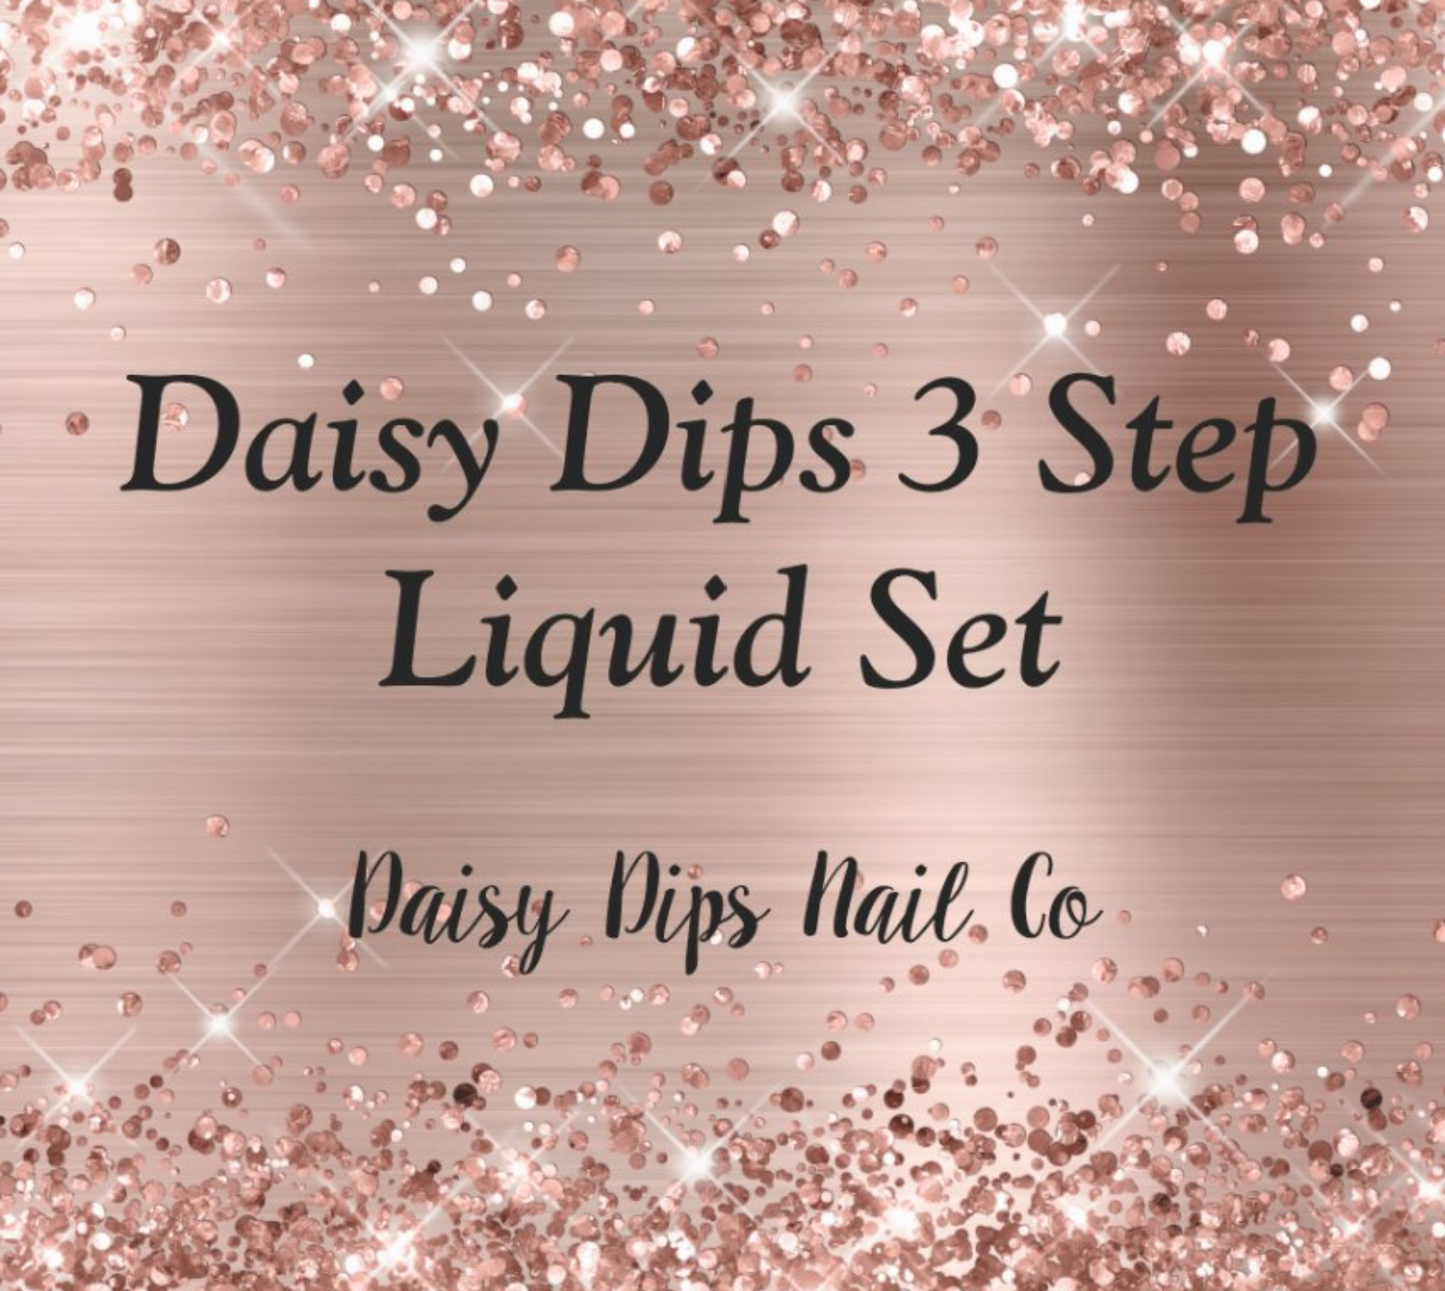 Daisy Dips 3 Step Liquid Set - 15 mL Bottles